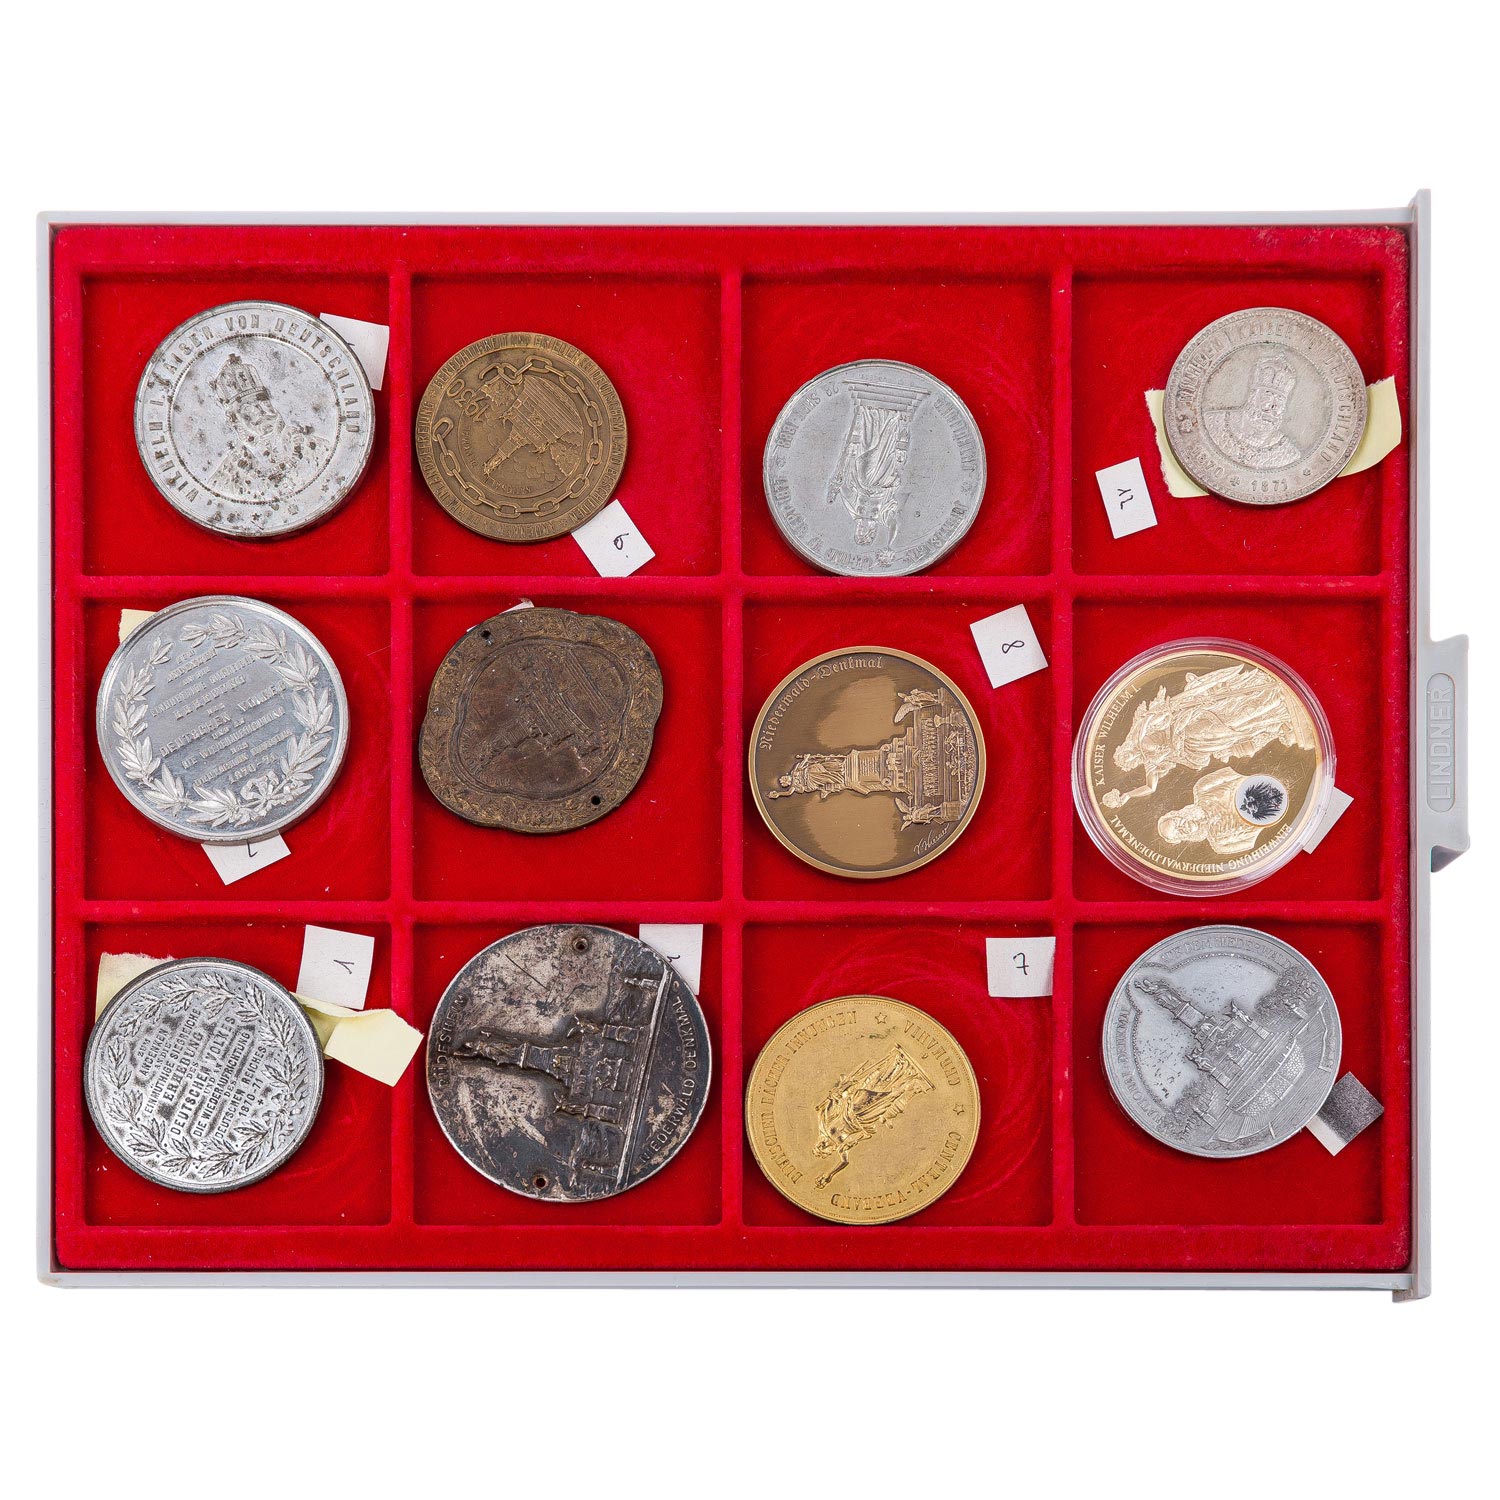 Umfangreiche Sammlung an Plaketten, Medaillen, Medaillons, Abzeichen etc. mit dem nationalen Niederw - Image 5 of 9